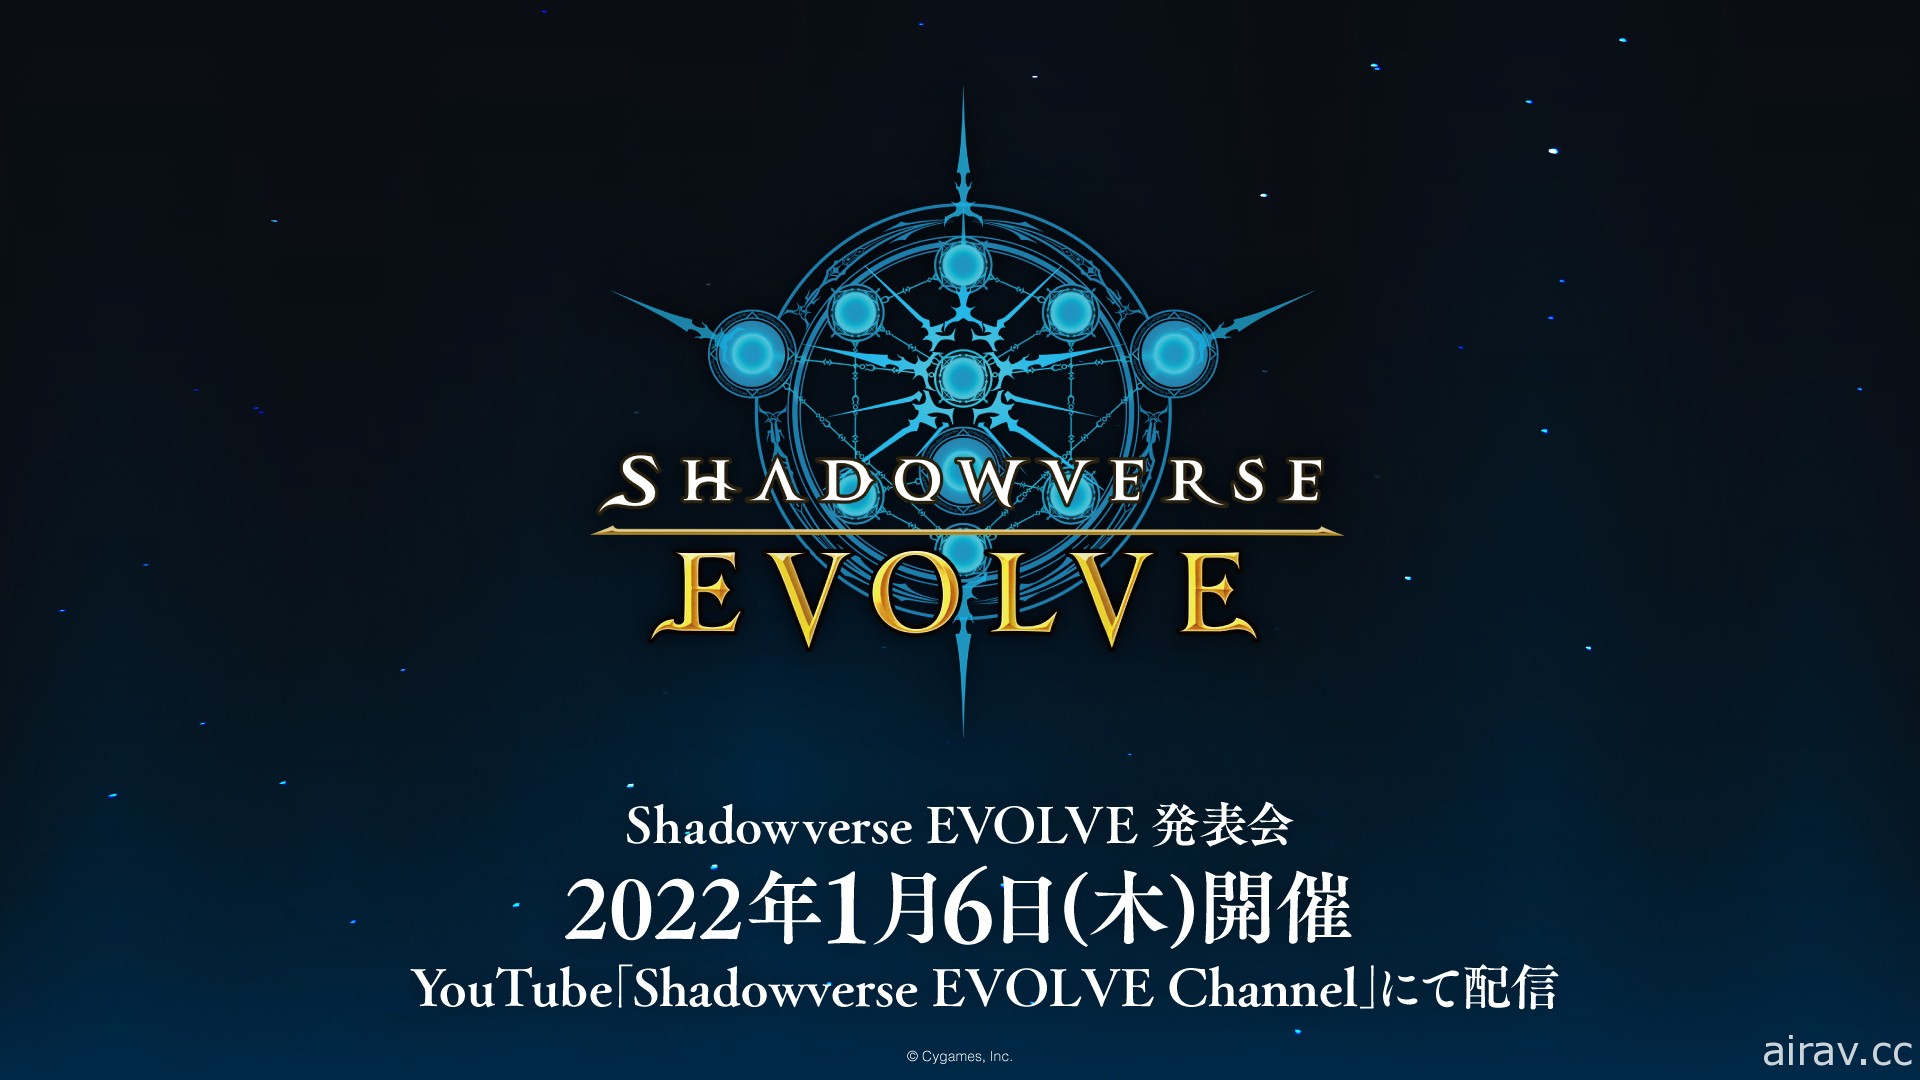 《闇影诗章》实体卡片游戏《Shadowverse EVOLVE》将于 2022 年发售